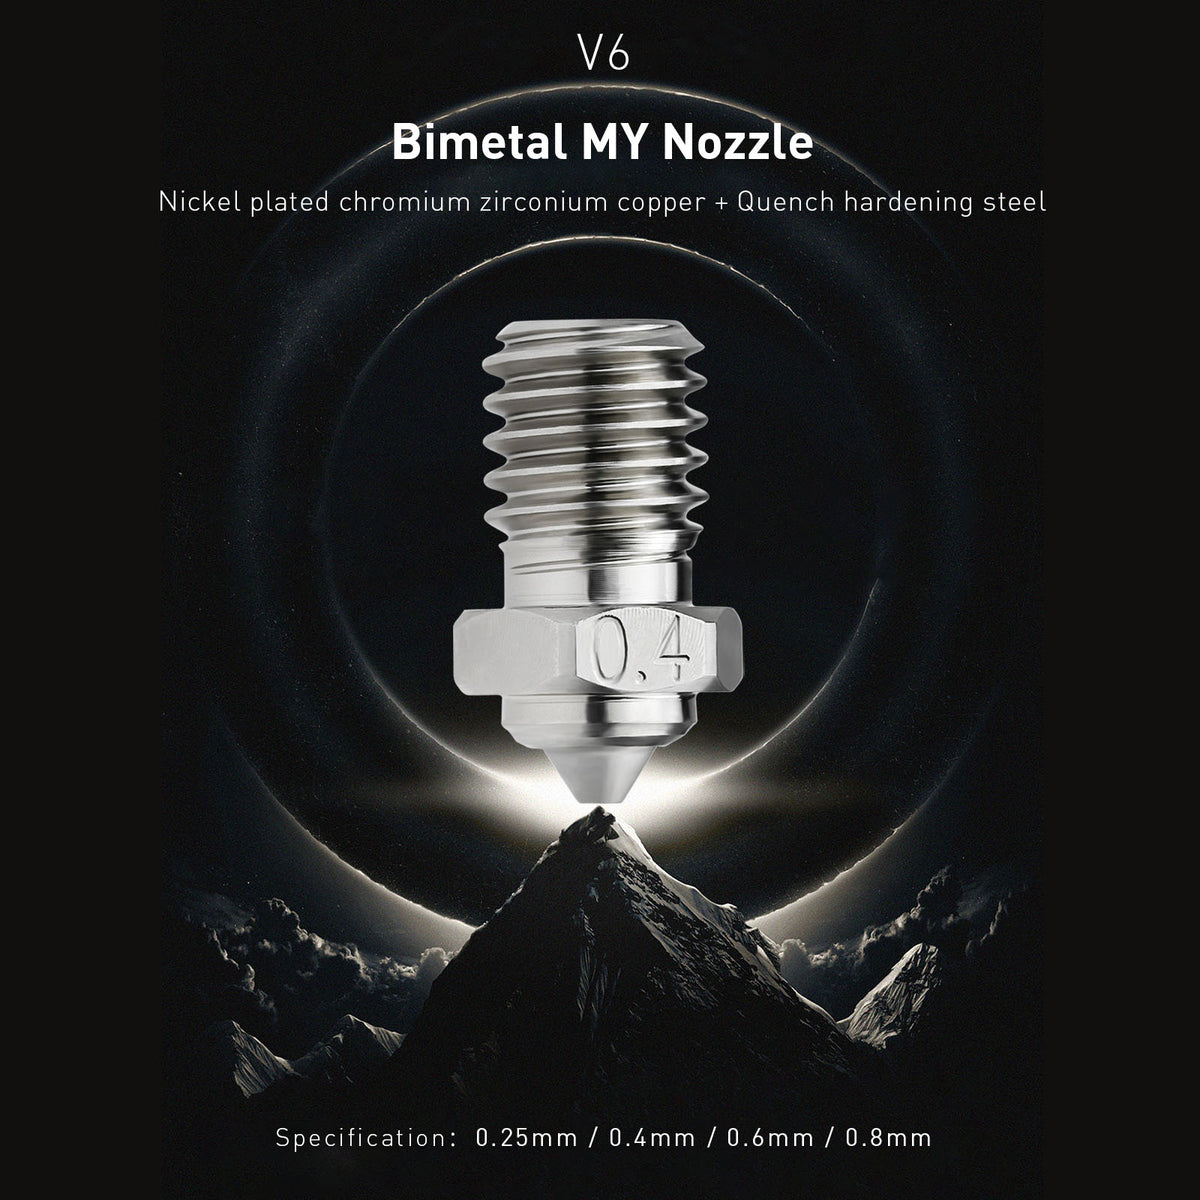 Bimetallic V6 nozzle